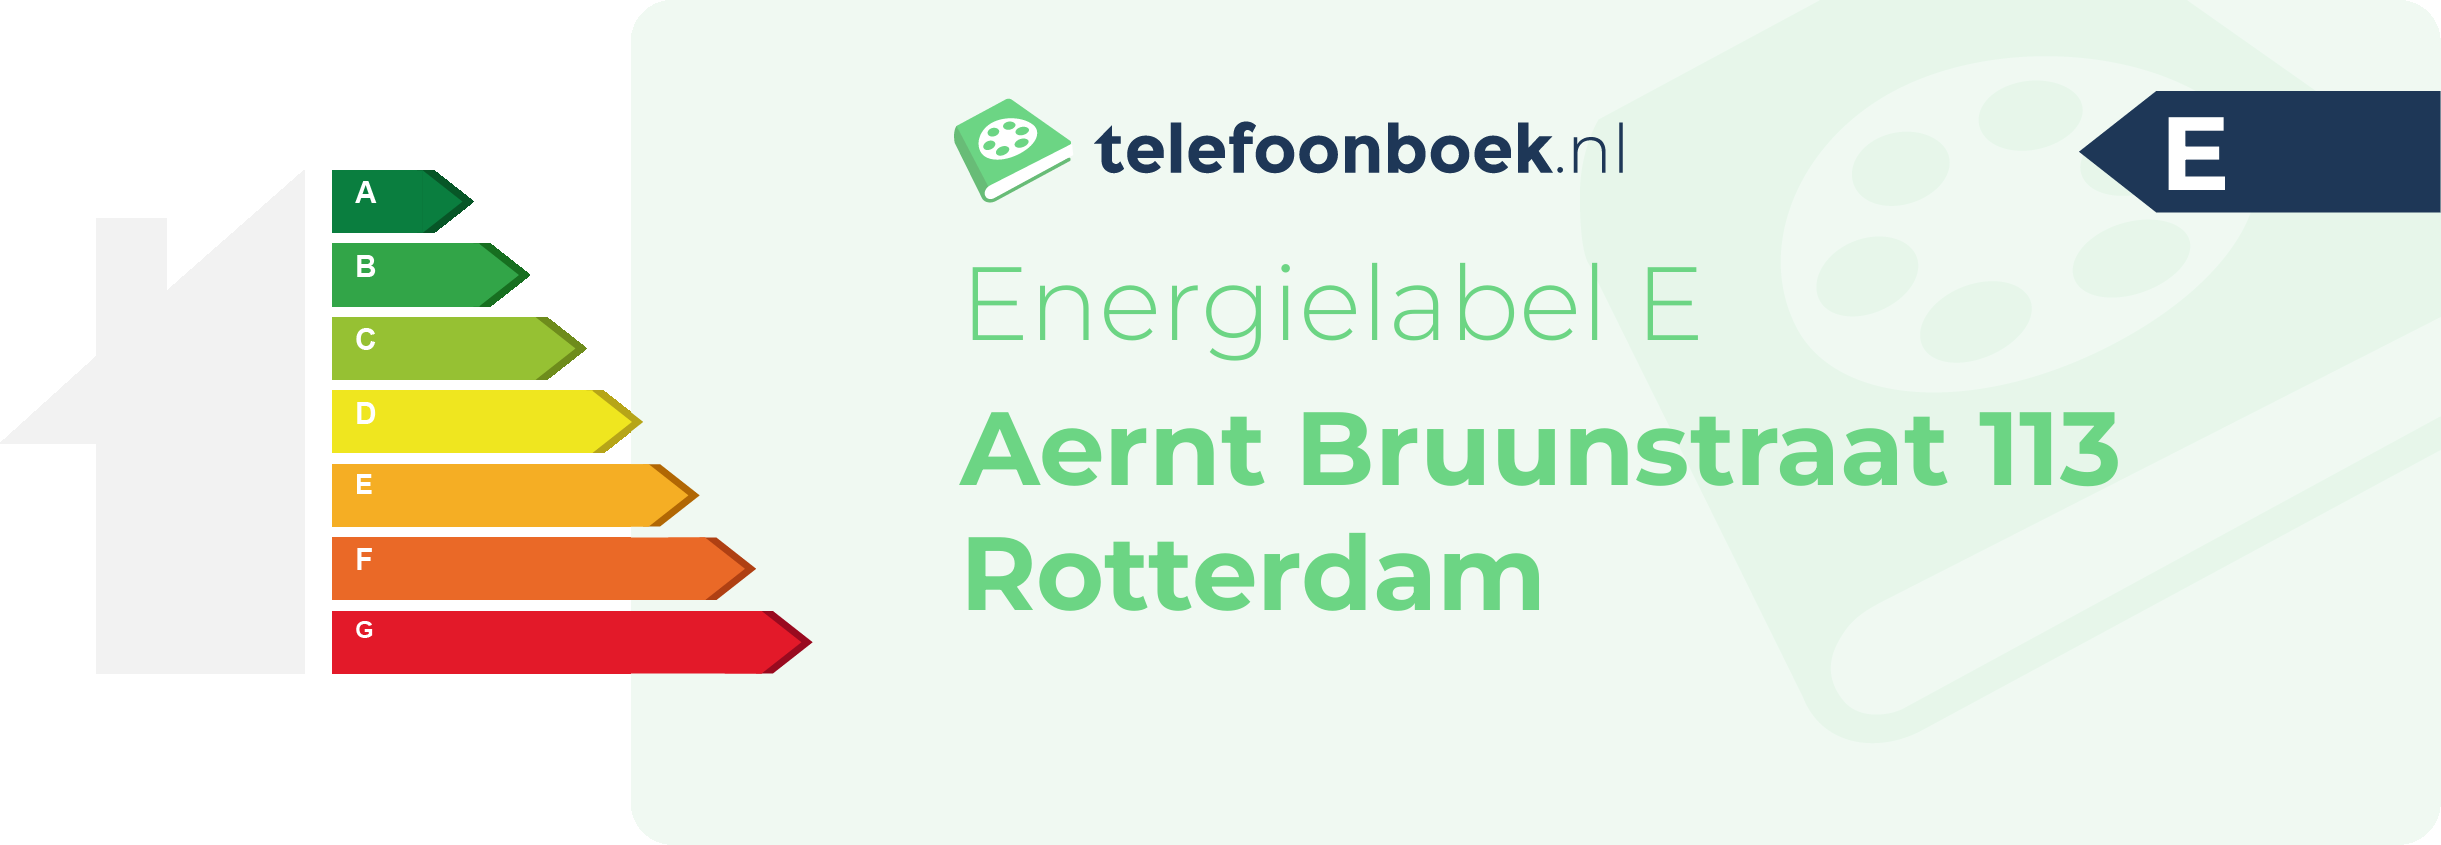 Energielabel Aernt Bruunstraat 113 Rotterdam